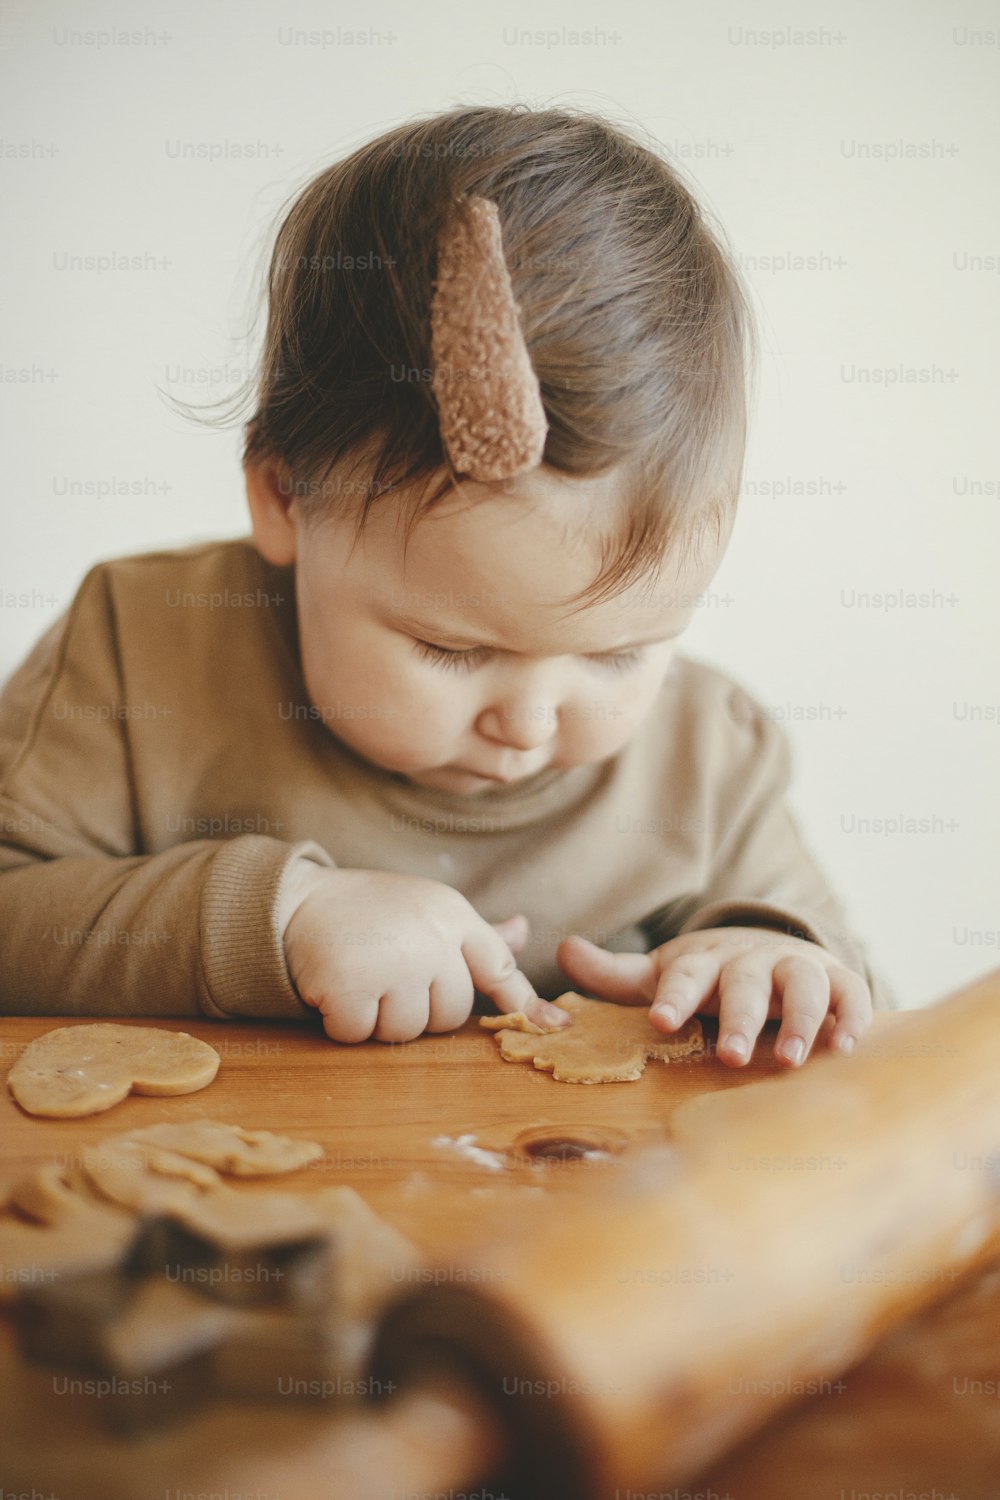 Süßes kleines Mädchen, das Weihnachtsplätzchen auf einem unordentlichen Tisch macht, Nahaufnahme. Entzückende kleine Tochter, die Mutter hilft und Teig für Lebkuchenkekse schneidet. Schöne Momente, Urlaubsvorbereitungen